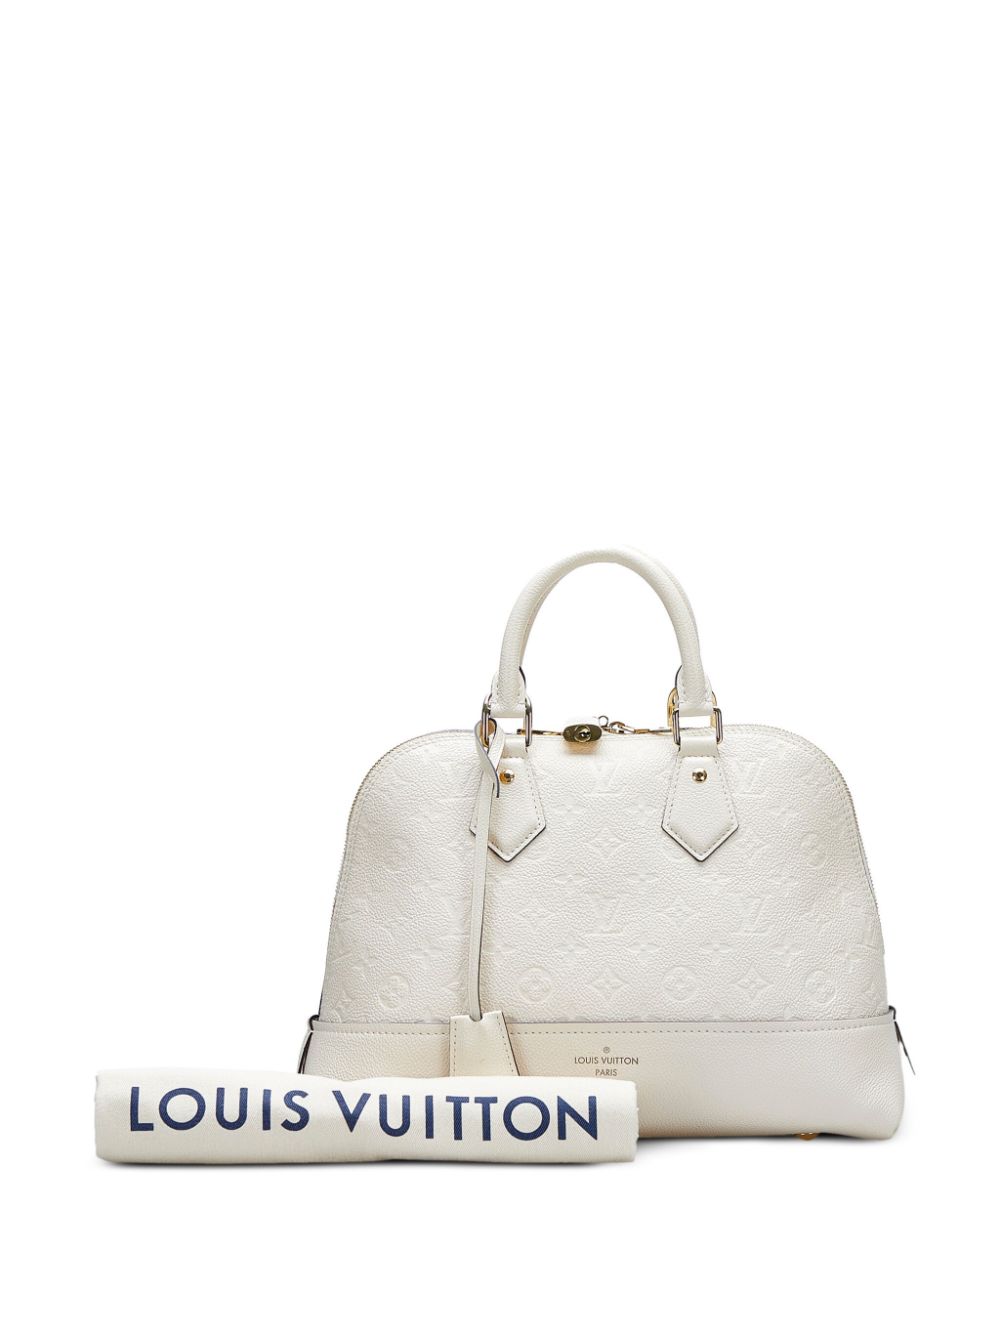 Louis Vuitton Neo Alma Handbag Monogram Empreinte Leather PM